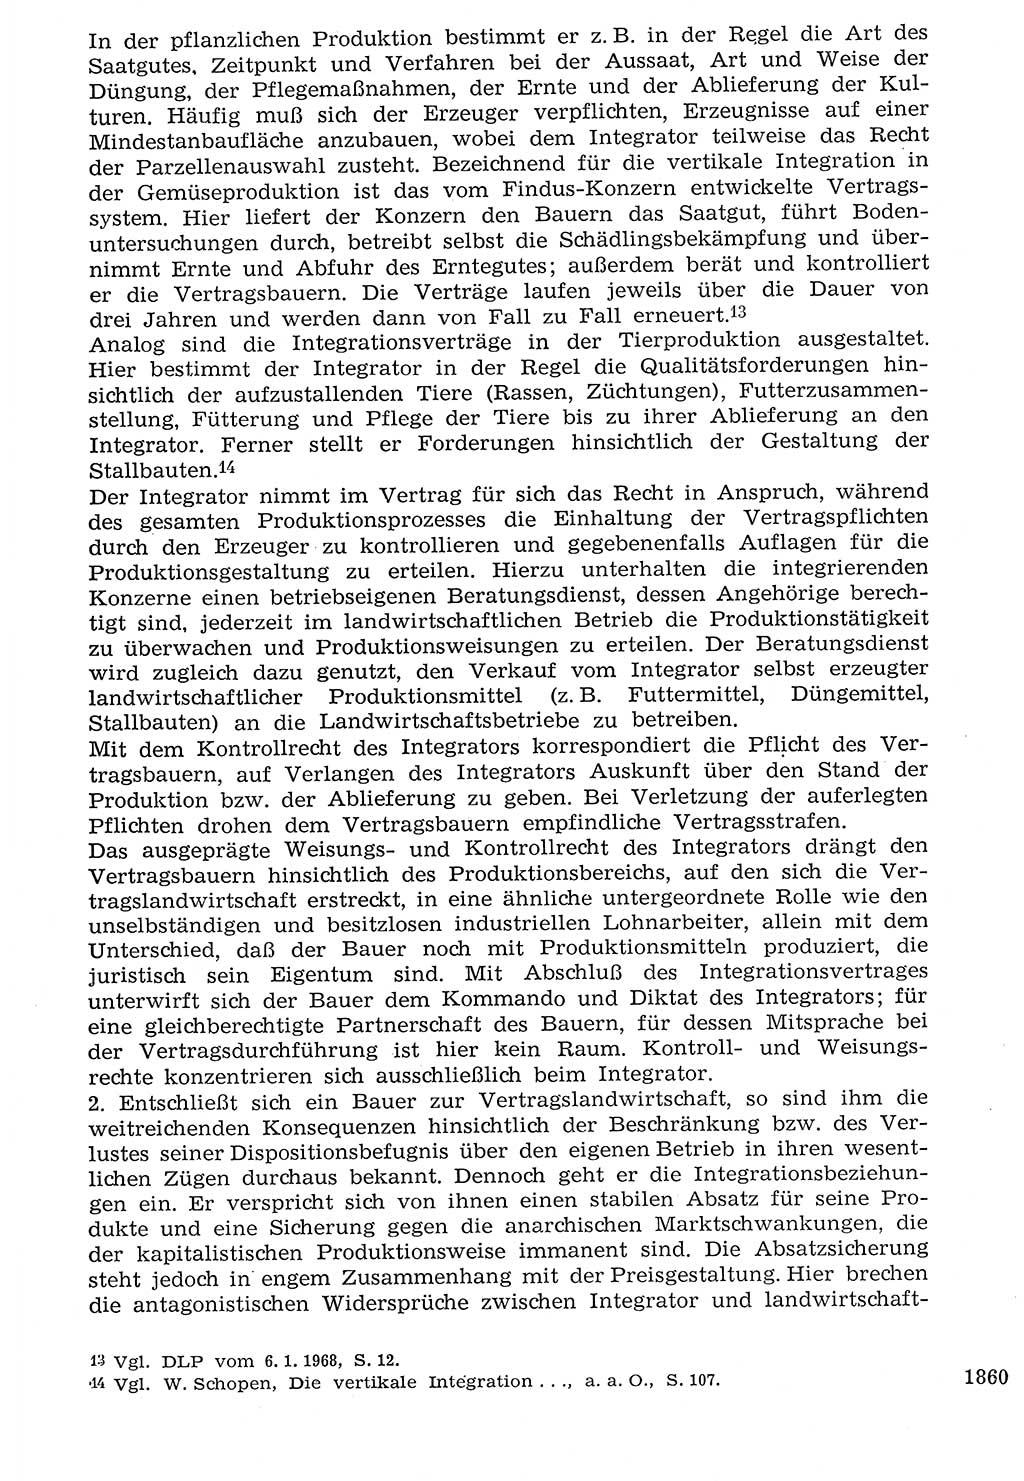 Staat und Recht (StuR), 17. Jahrgang [Deutsche Demokratische Republik (DDR)] 1968, Seite 1860 (StuR DDR 1968, S. 1860)